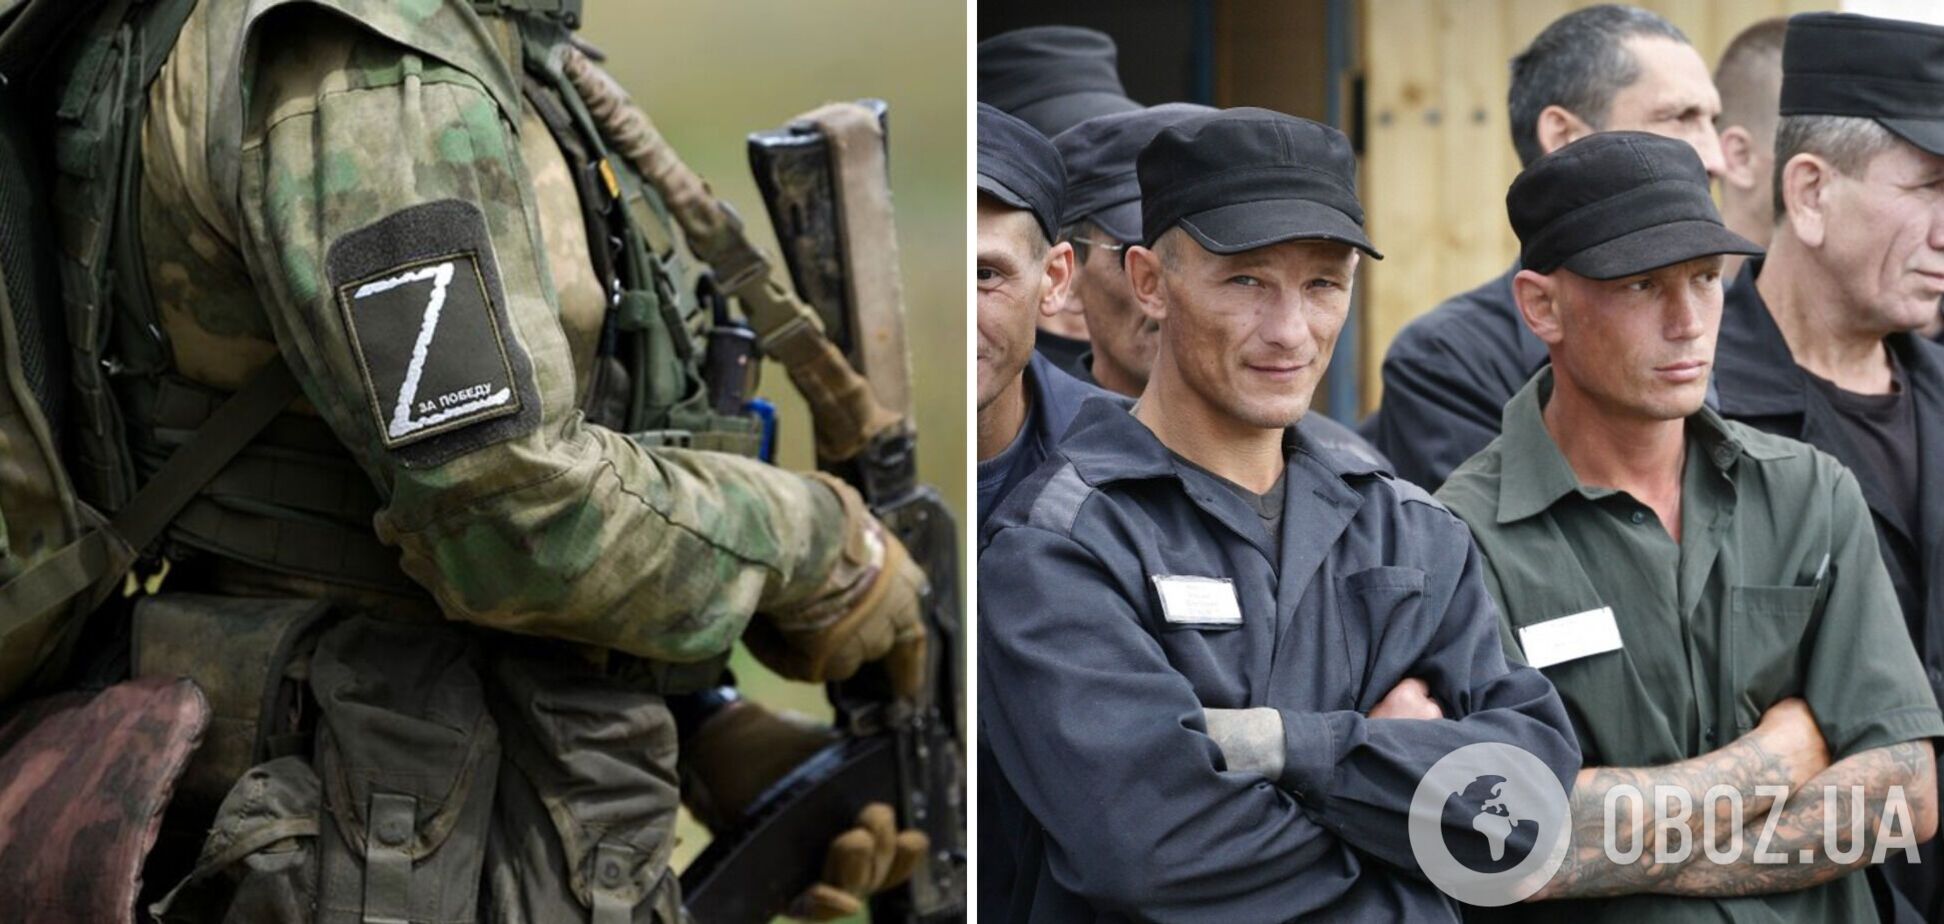 ЧВК 'Вагнер' начала вербовать на войну заключенных на временно оккупированных территориях Украины